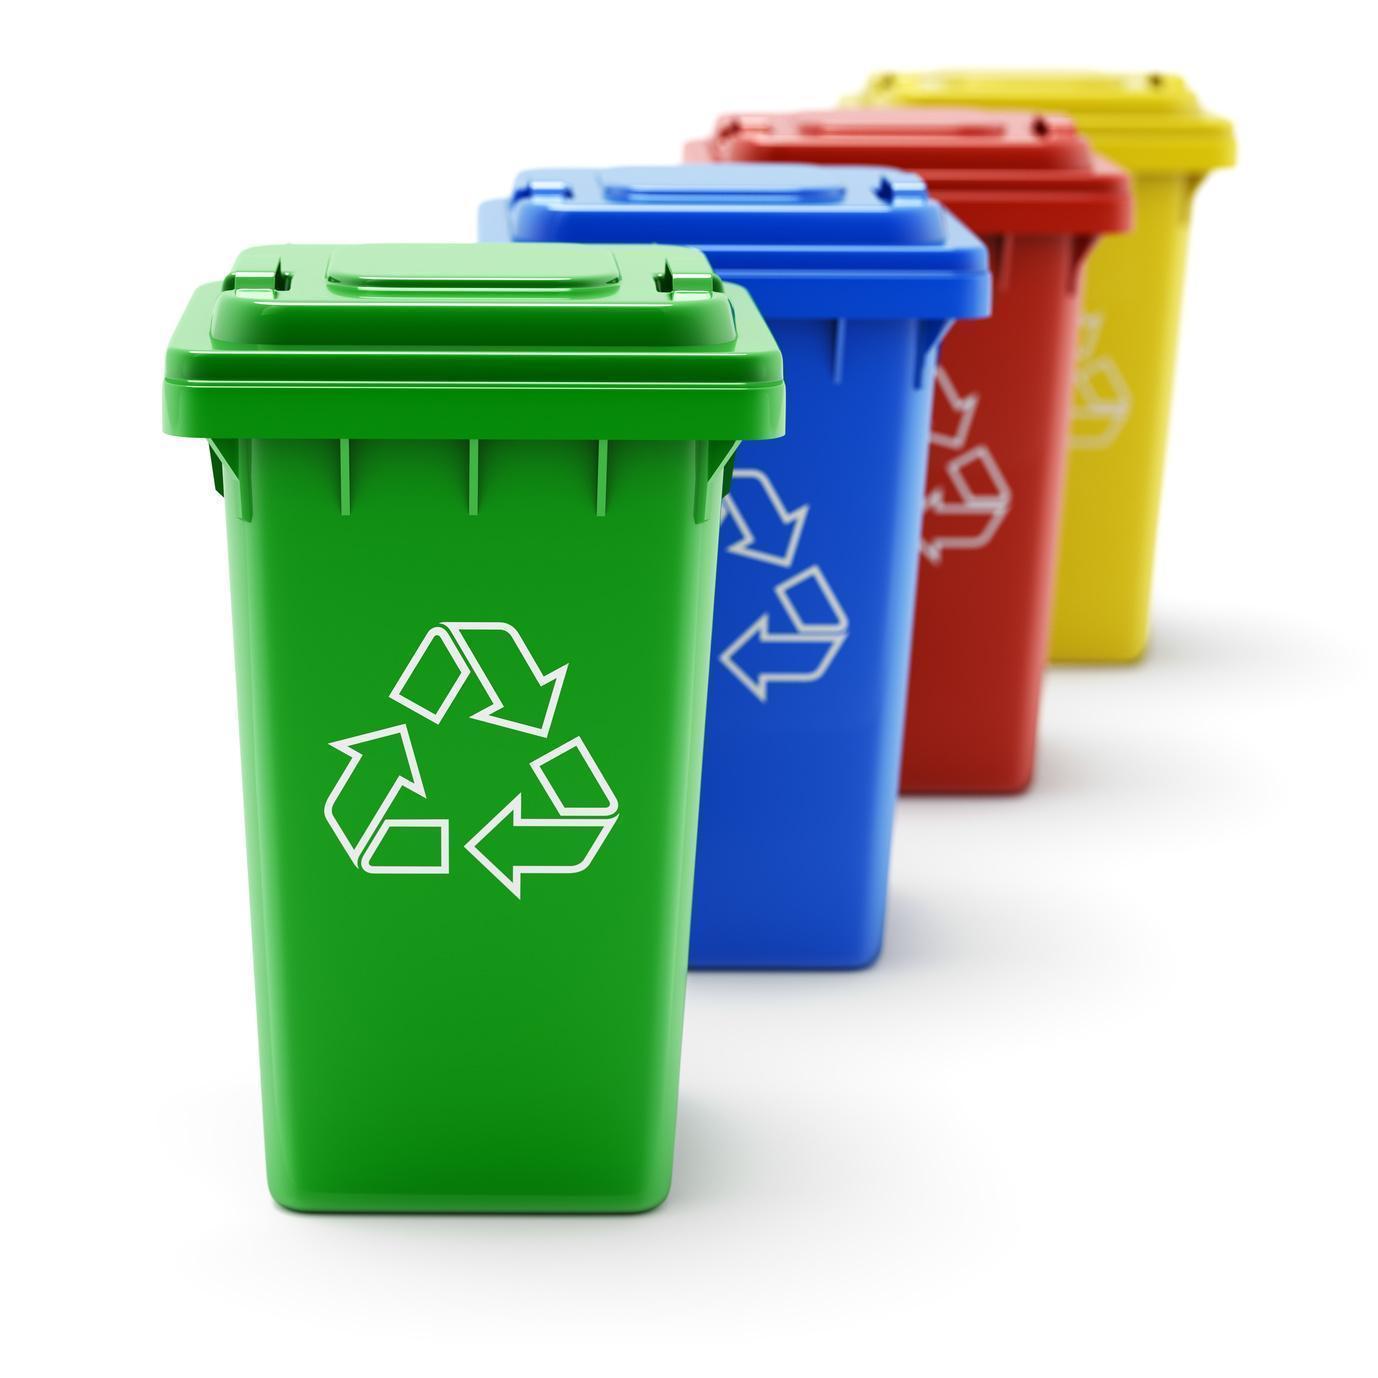 ekoprod recykling odpadów